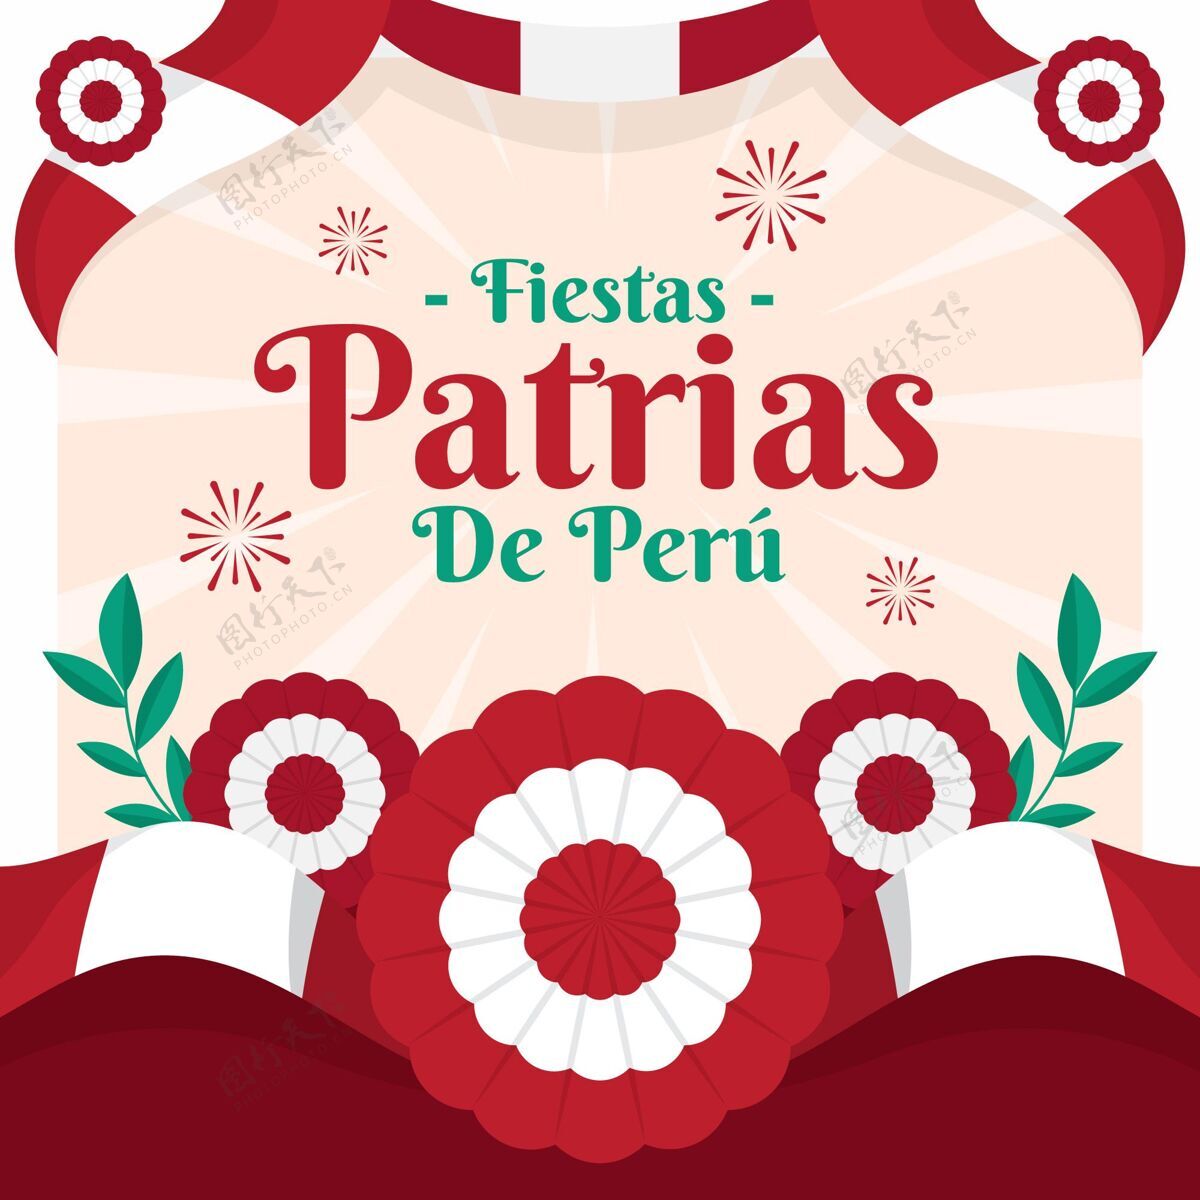 独立平节帕特里亚斯秘鲁插画玫瑰园7月28日秘鲁国庆节